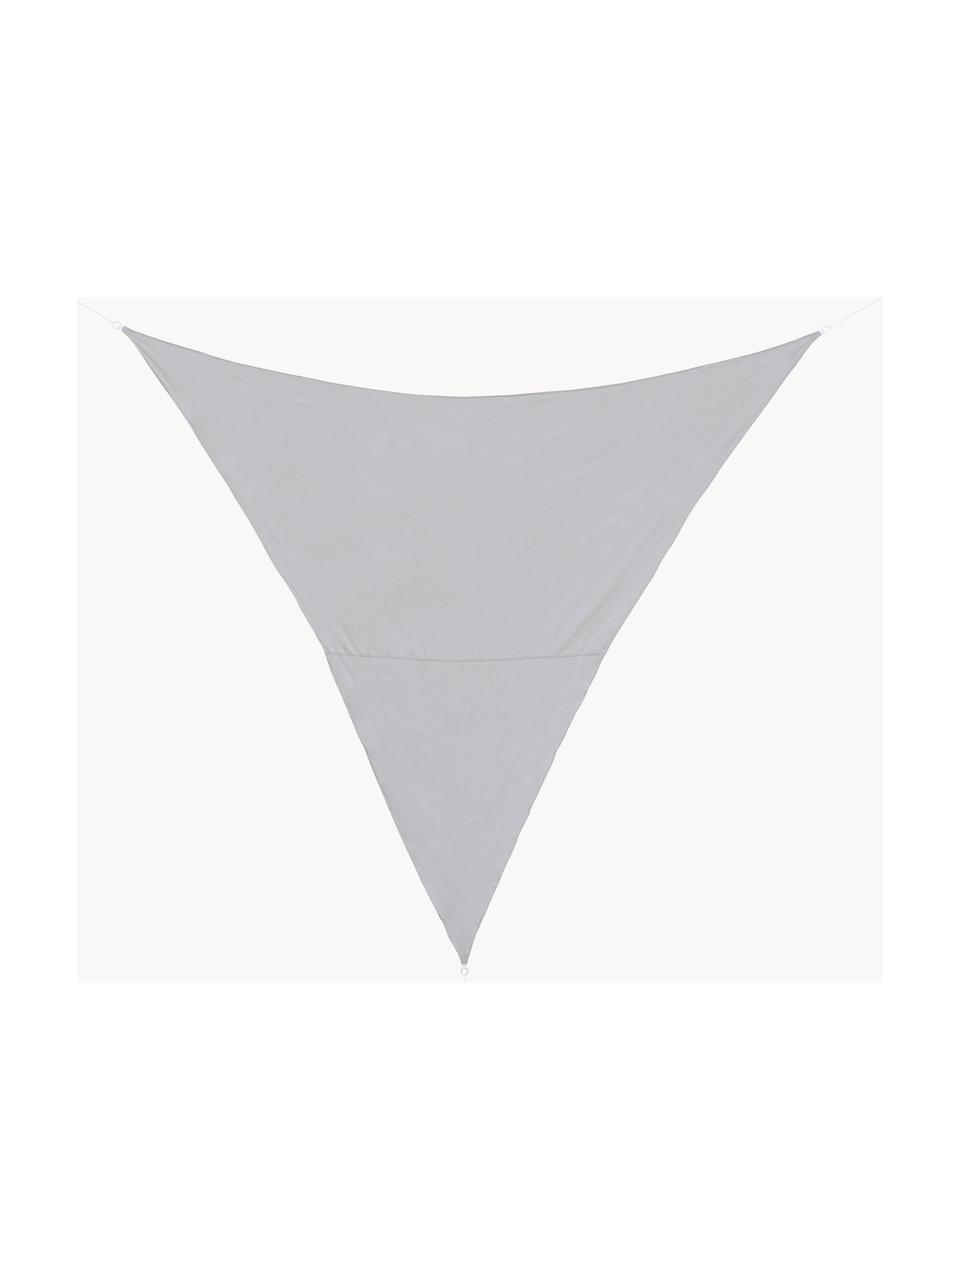 Auvent Triangle, Gris, larg. 360 x long. 360 cm